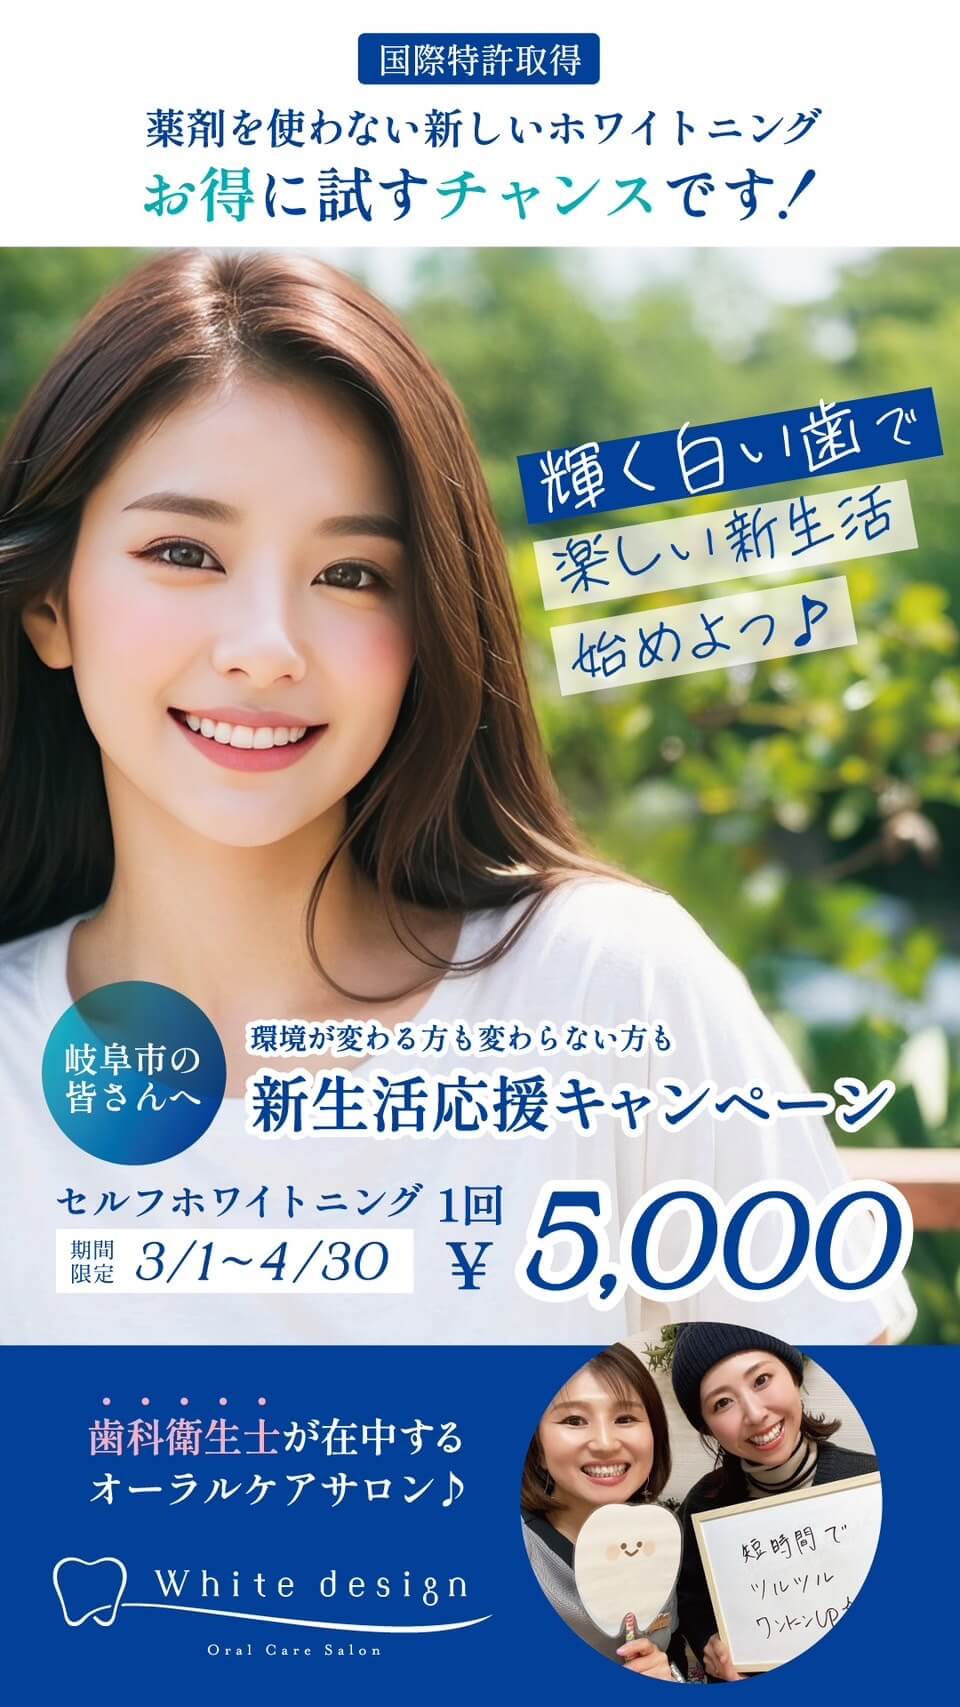 輝く白い歯で楽しい新生活始めよう！岐阜市の皆さんへ。新生活応援キャンペーンでセルフホワイトニング一回5,000円。期間限定で3月1日〜4月30日まで